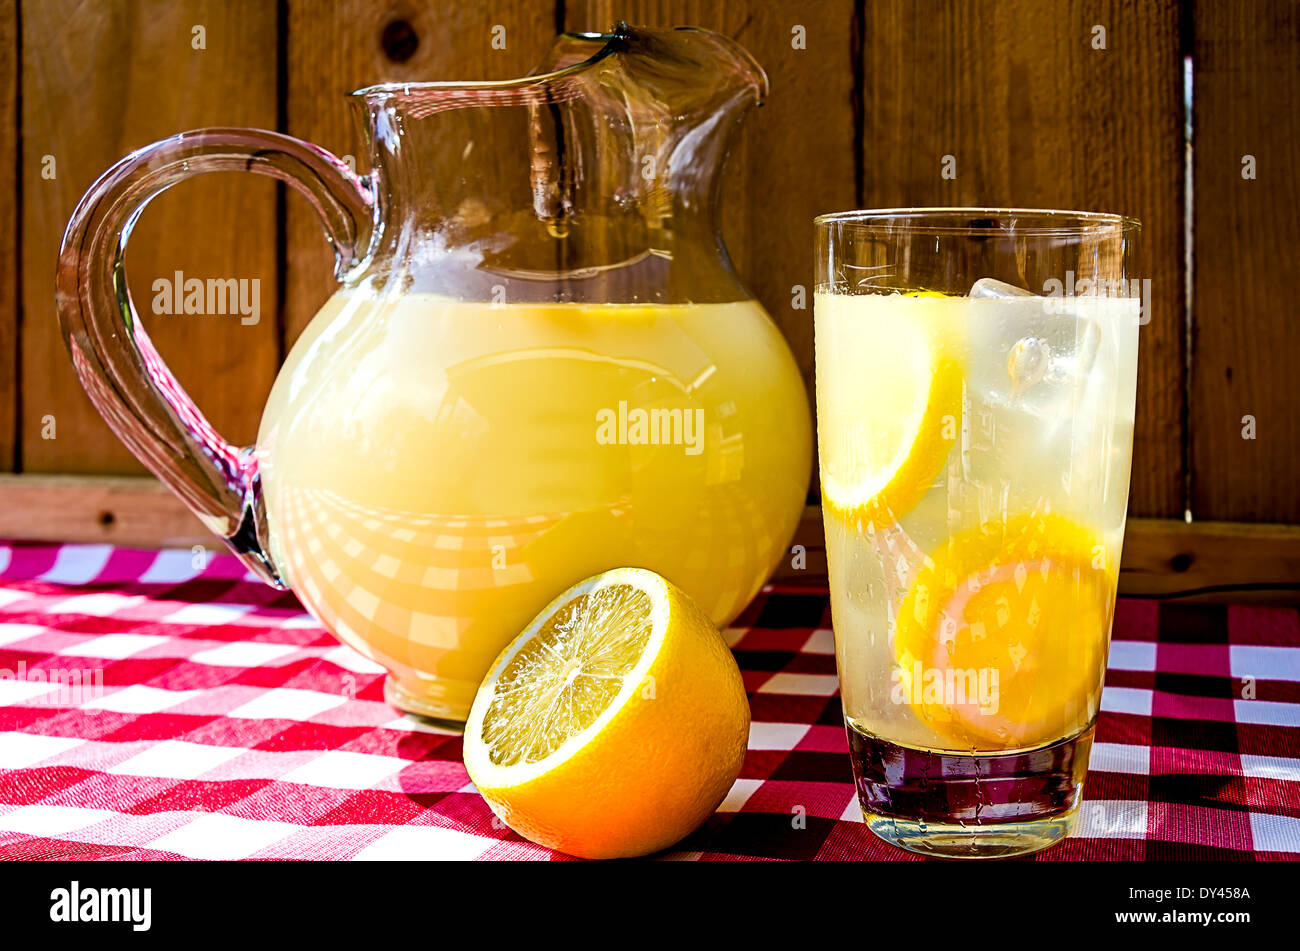 Limonade und Krug mit in Scheiben geschnittenen Zitronen auf rot karierte Tischdecke. Stockfoto